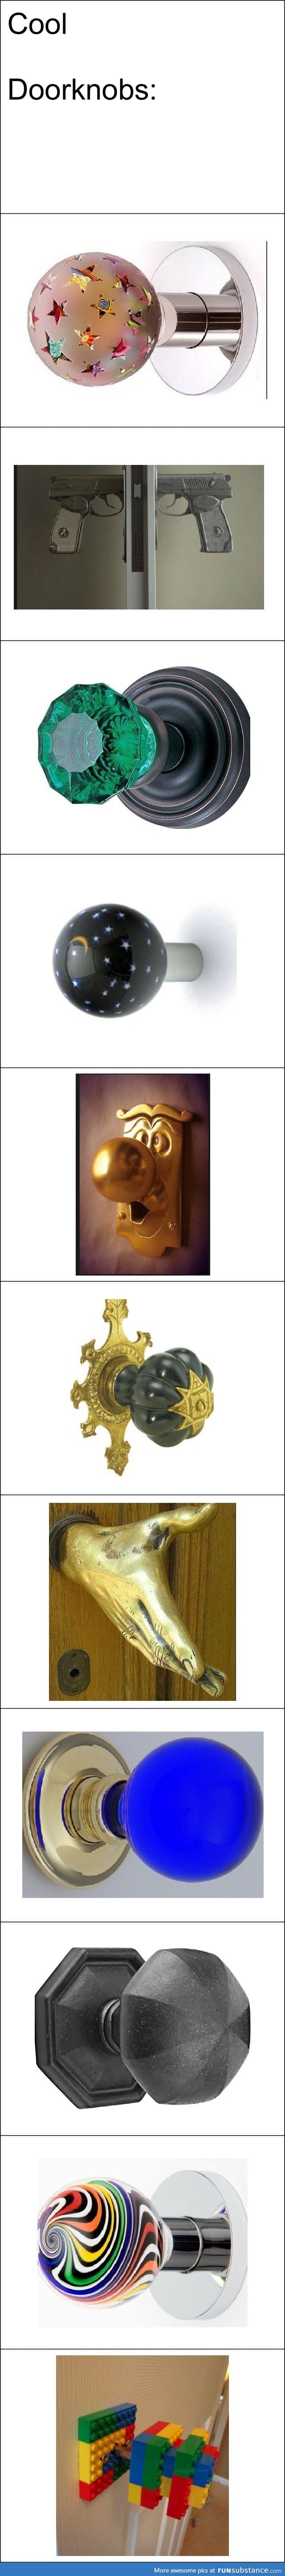 Doorknobs are amazing